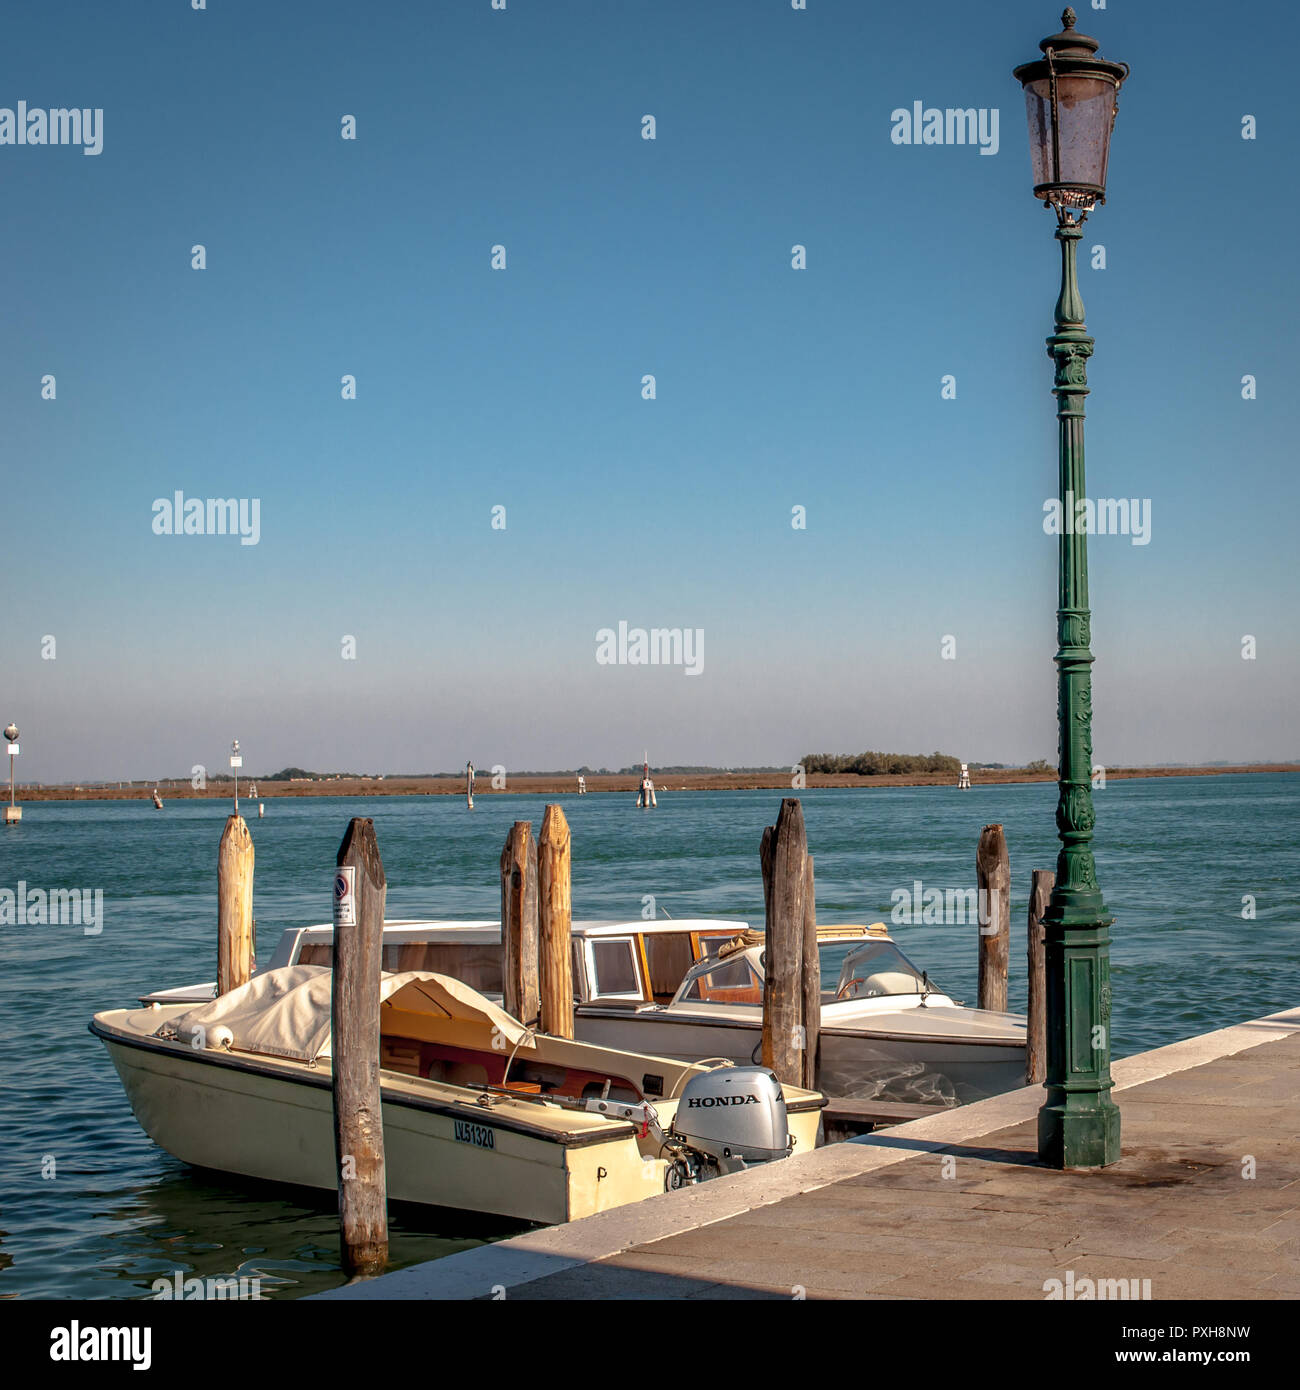 Venedig ist die Hauptstadt der Region Venetien in Norditalien und wurde auf mehr als 100 kleinen Inseln in einer Adria-Lagune erbaut. Stock Photo